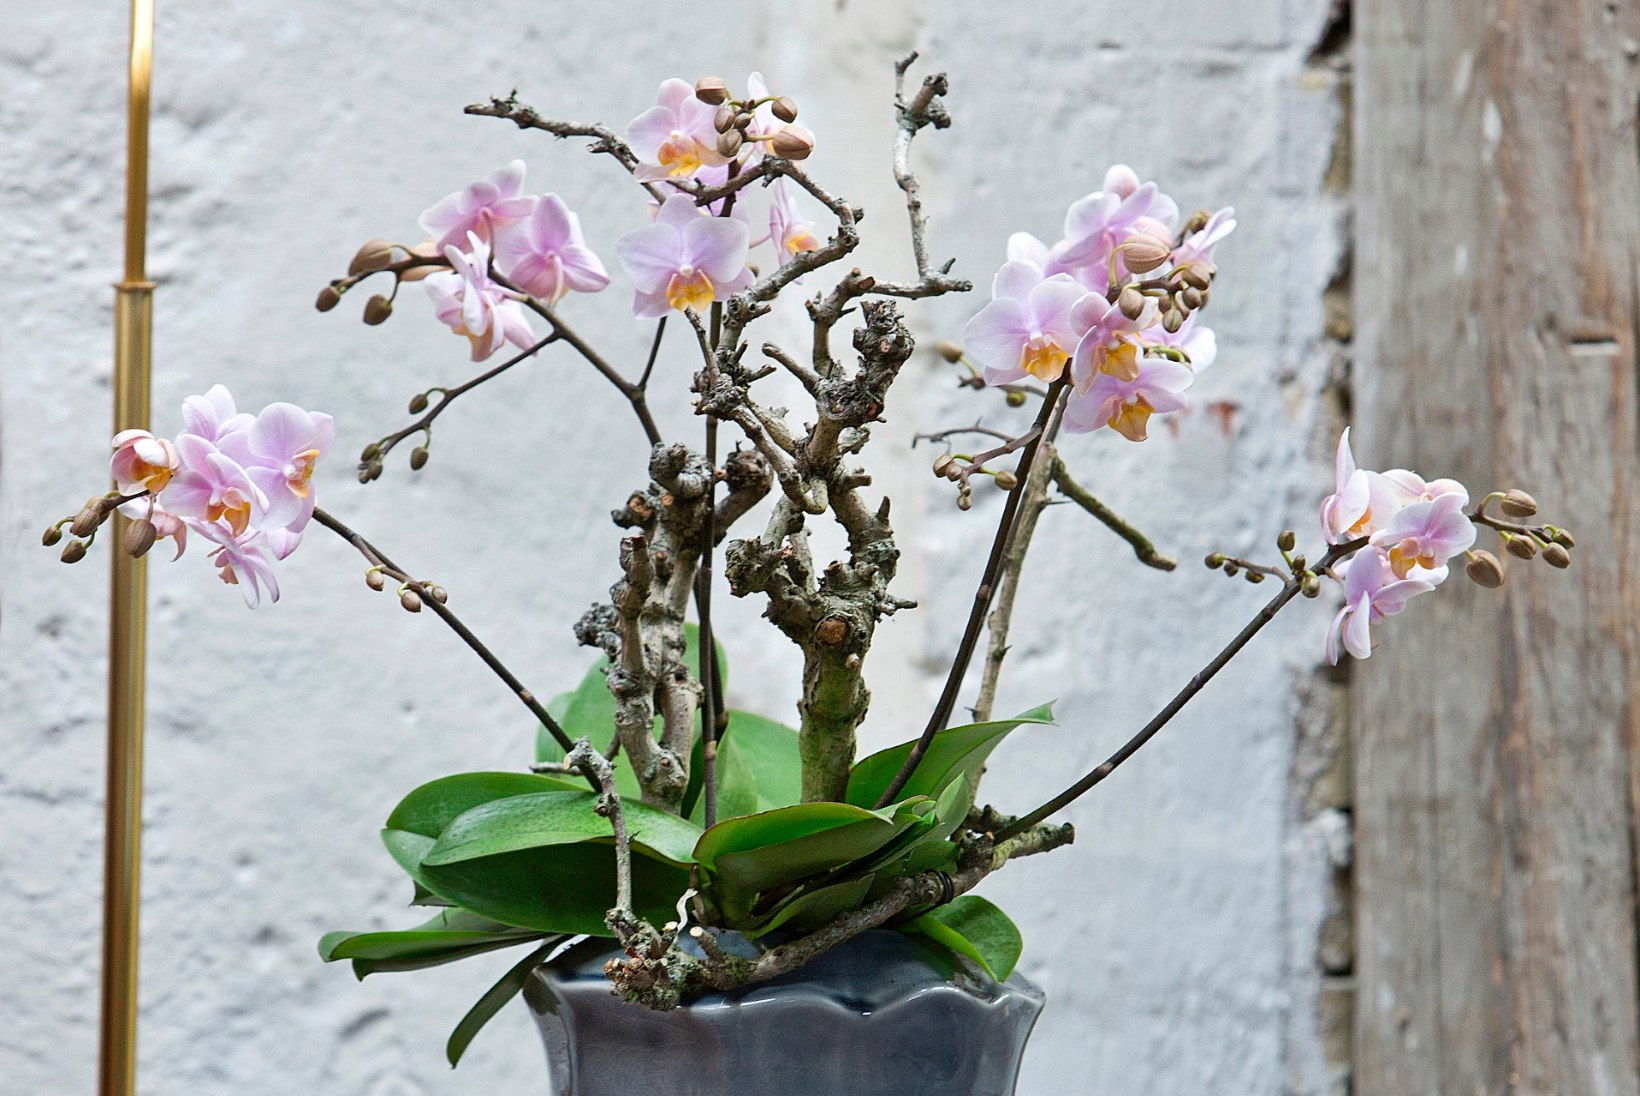 Salapärane orhidee: pirtsutajatest leplike õitsejateni